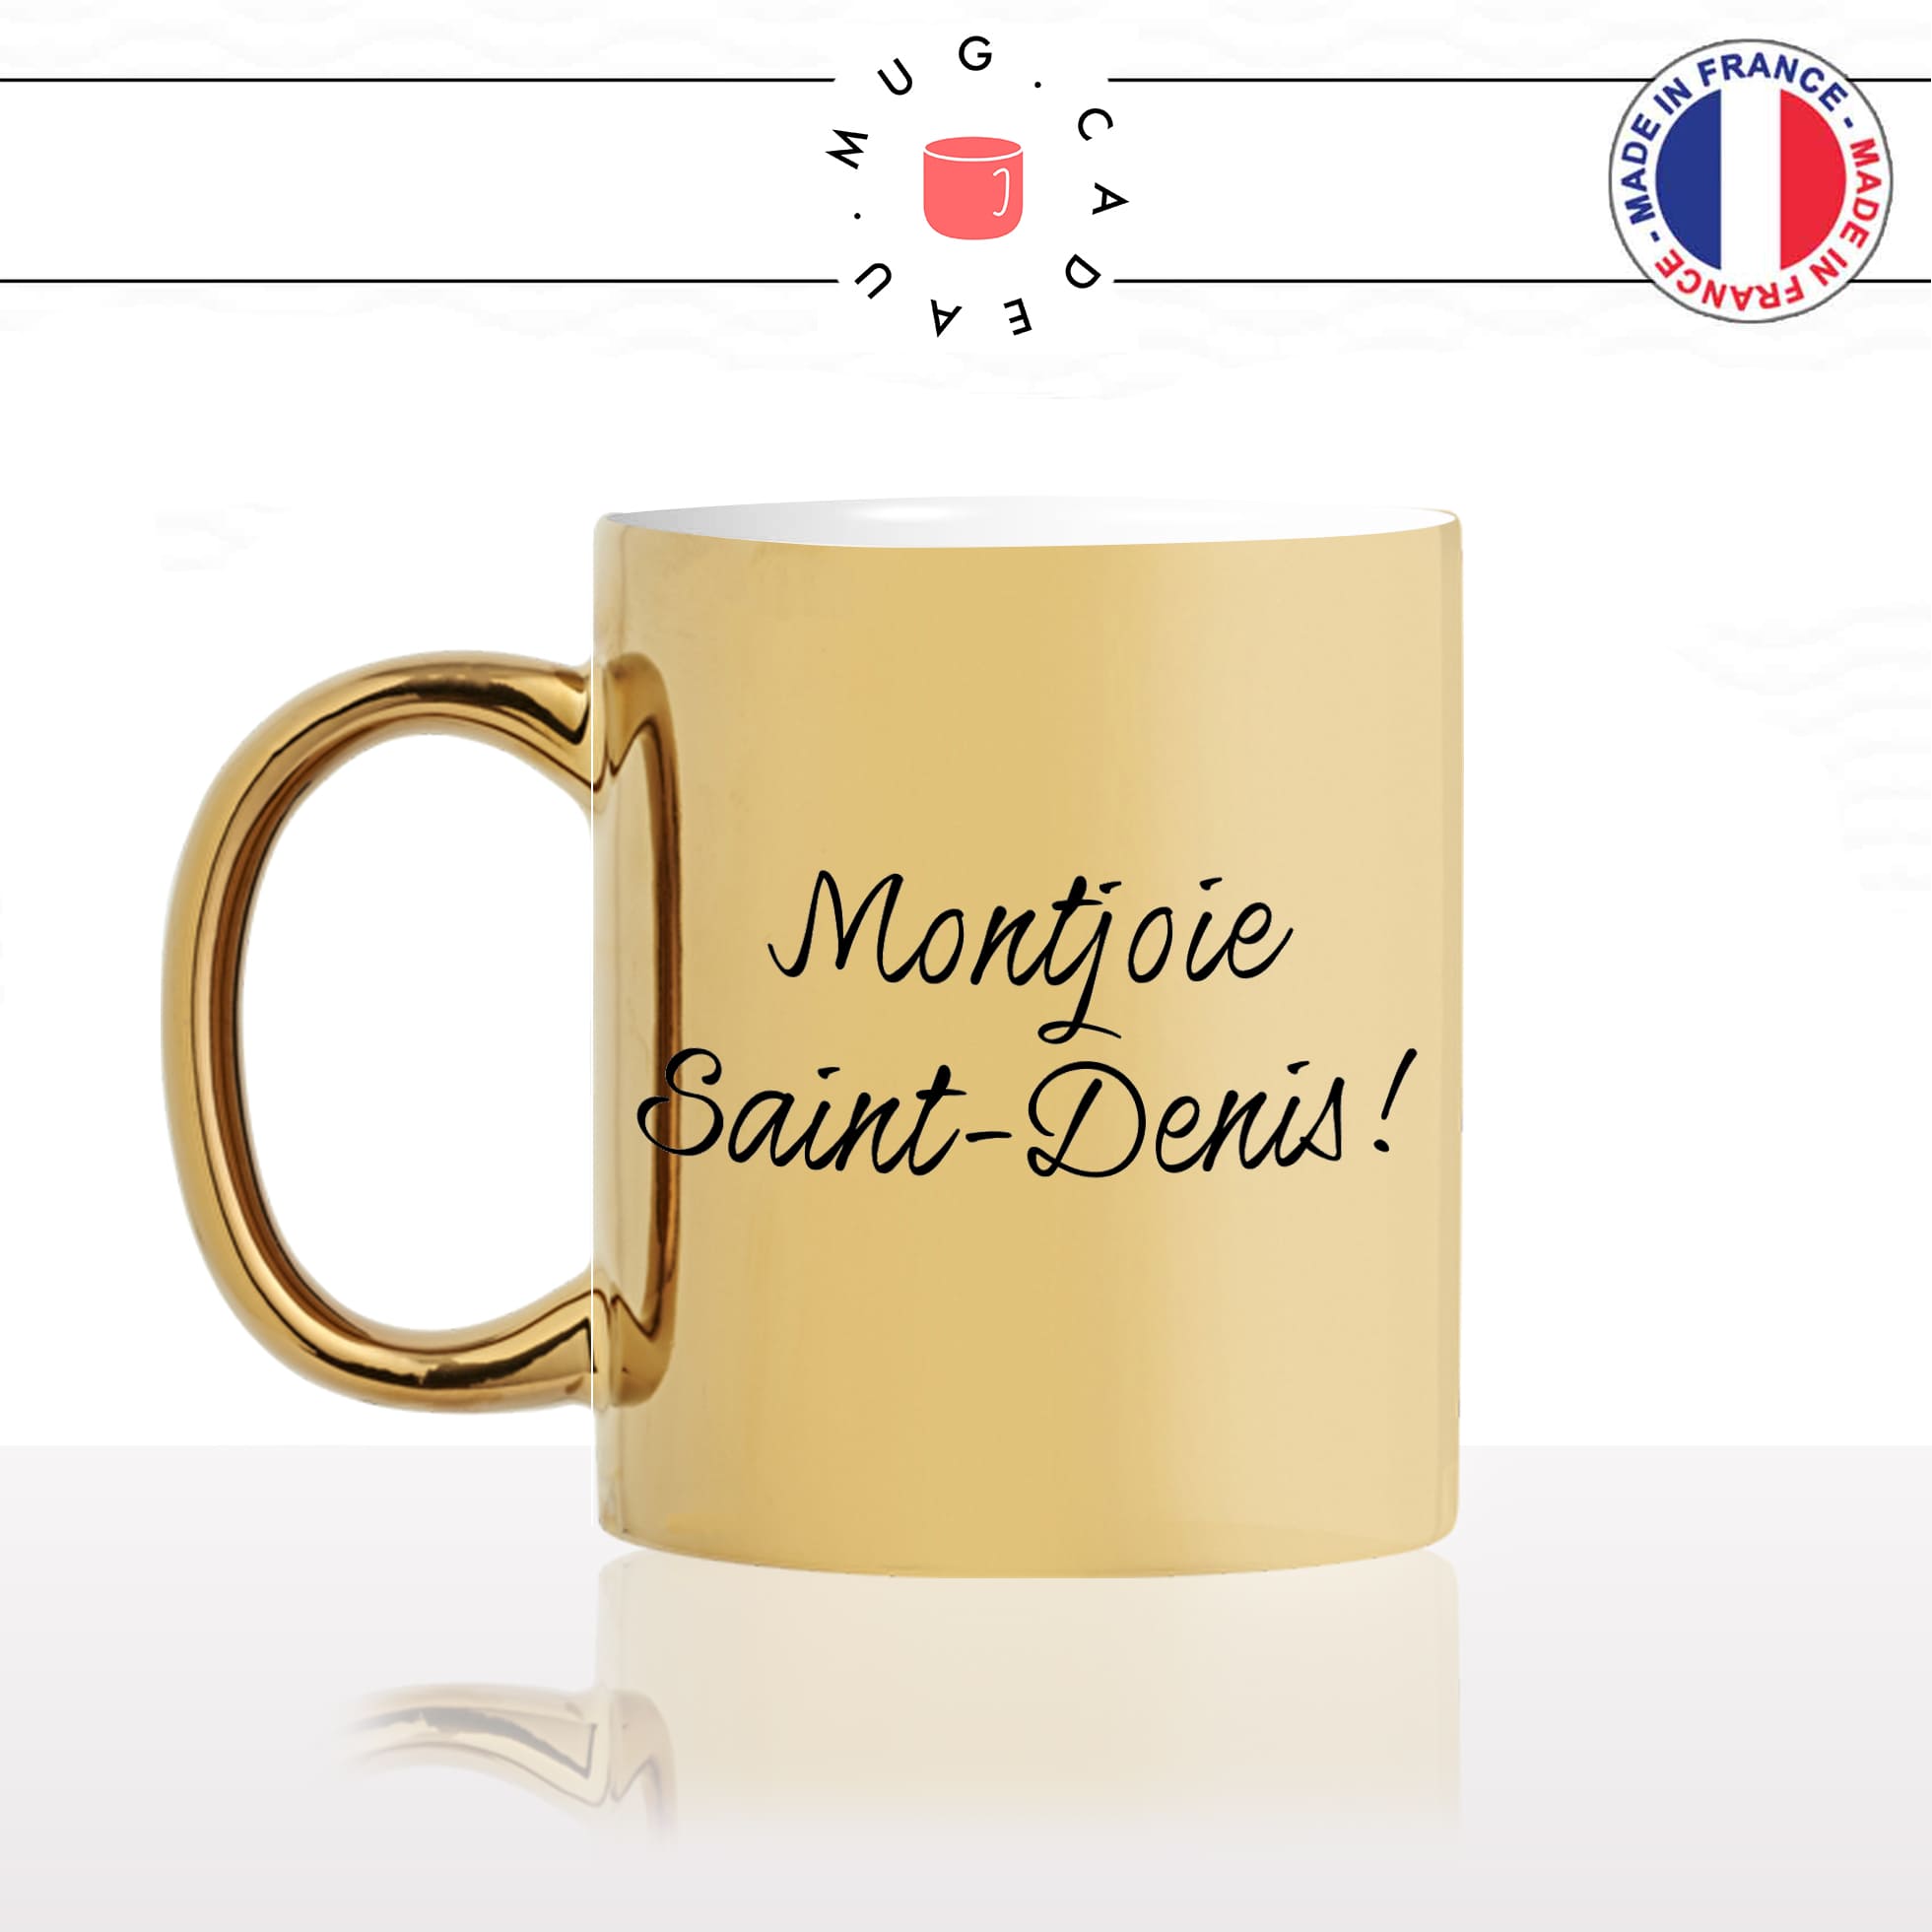 mug-tasse-or-doré-gold-unique-montjoie-saint-denis-les-visiteurs-gifle-homme-femme-film-francais-humour-fun-cool-idée-cadeau-original